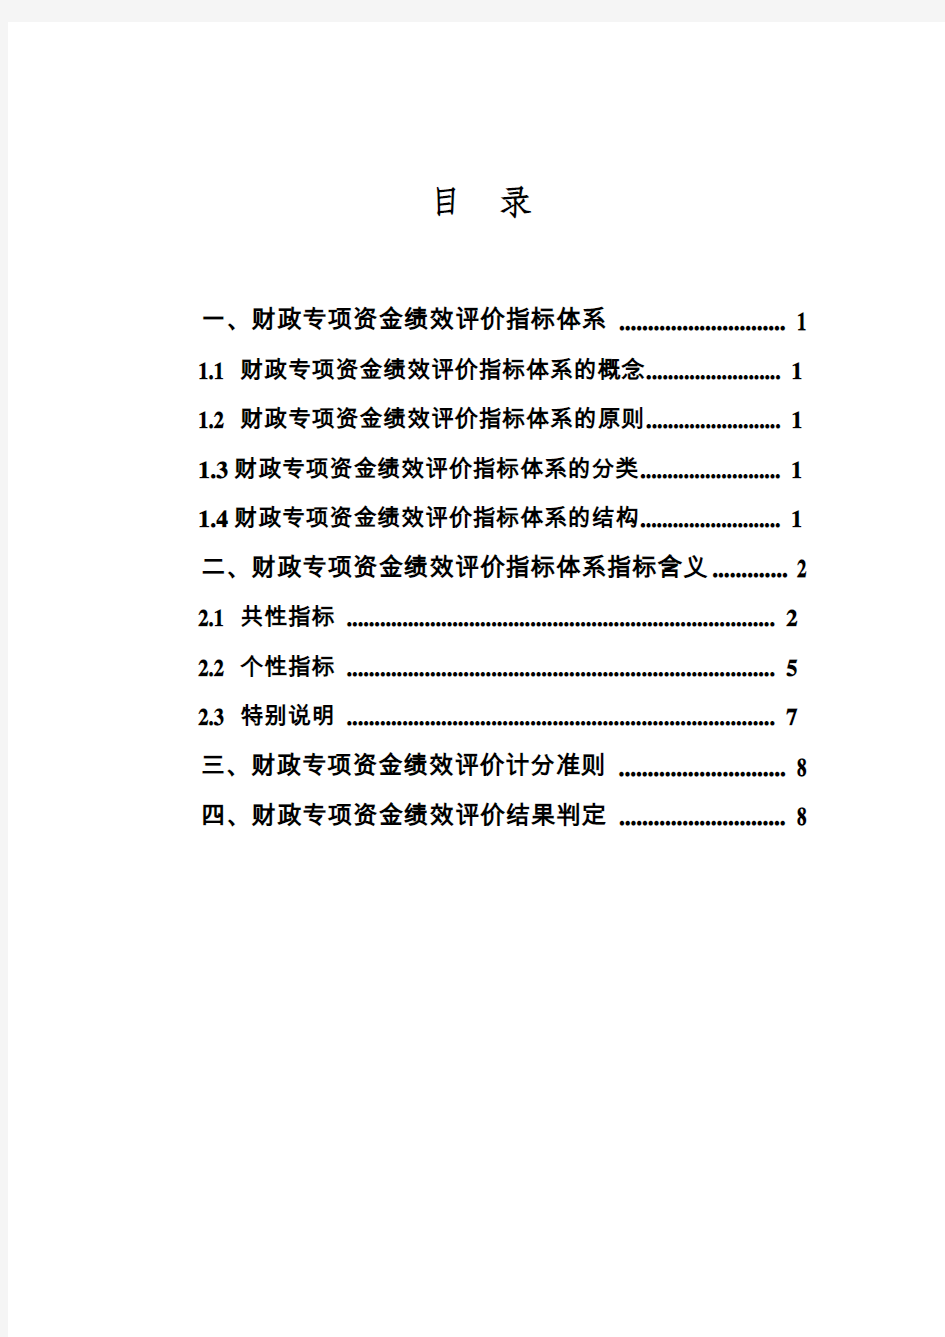 重庆市财政专项资金绩效评价指标体系